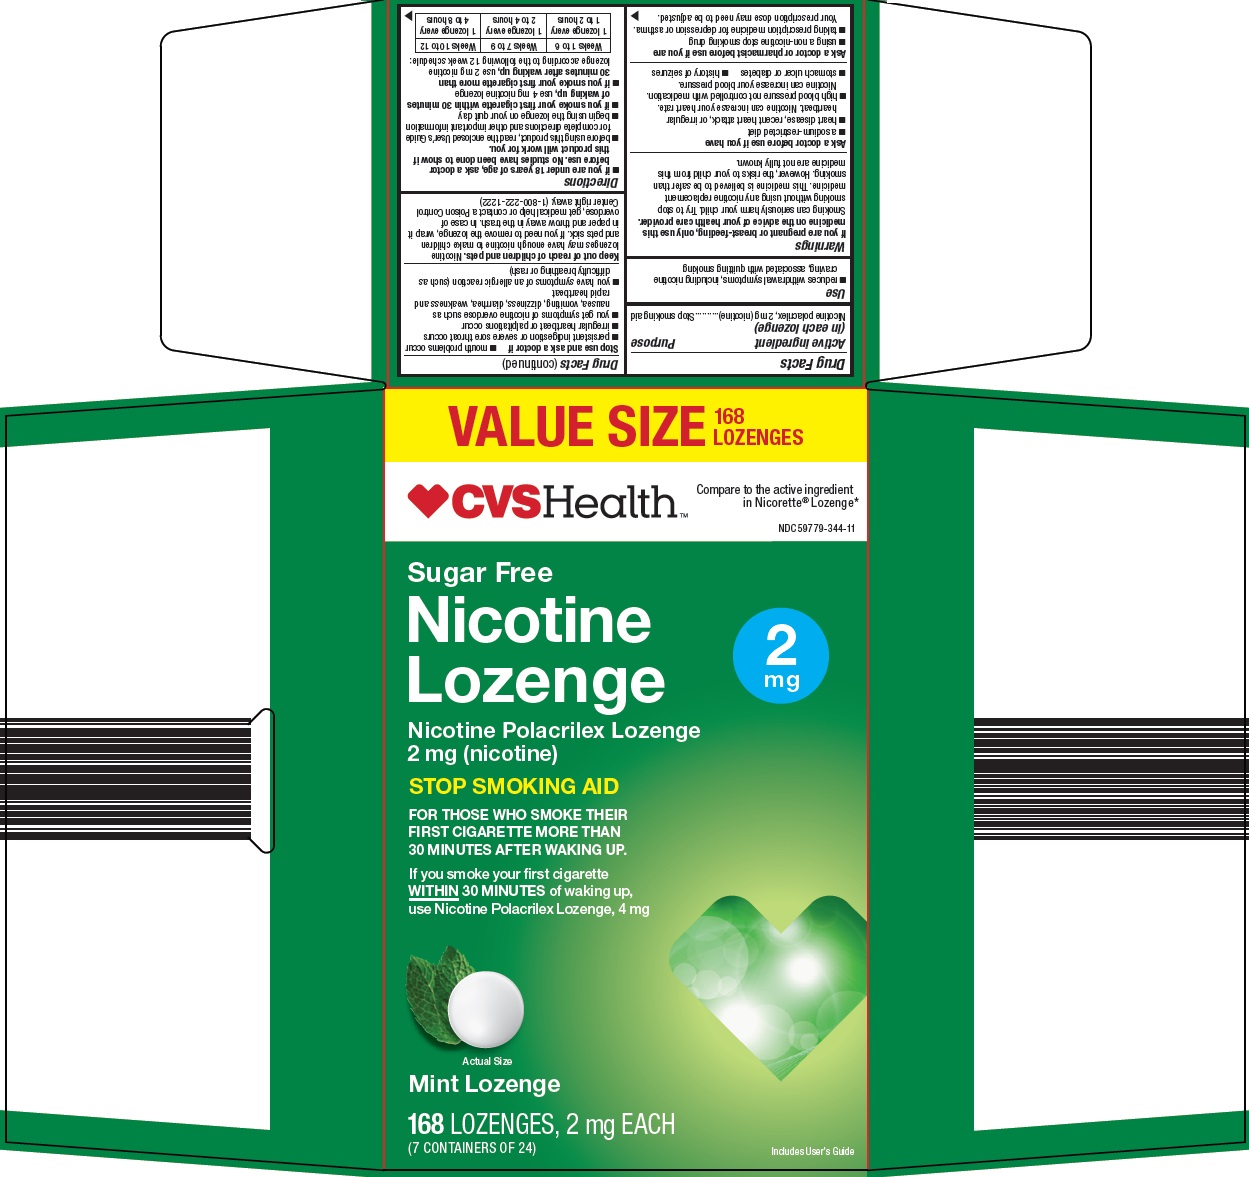 nicotine lozenge image 1